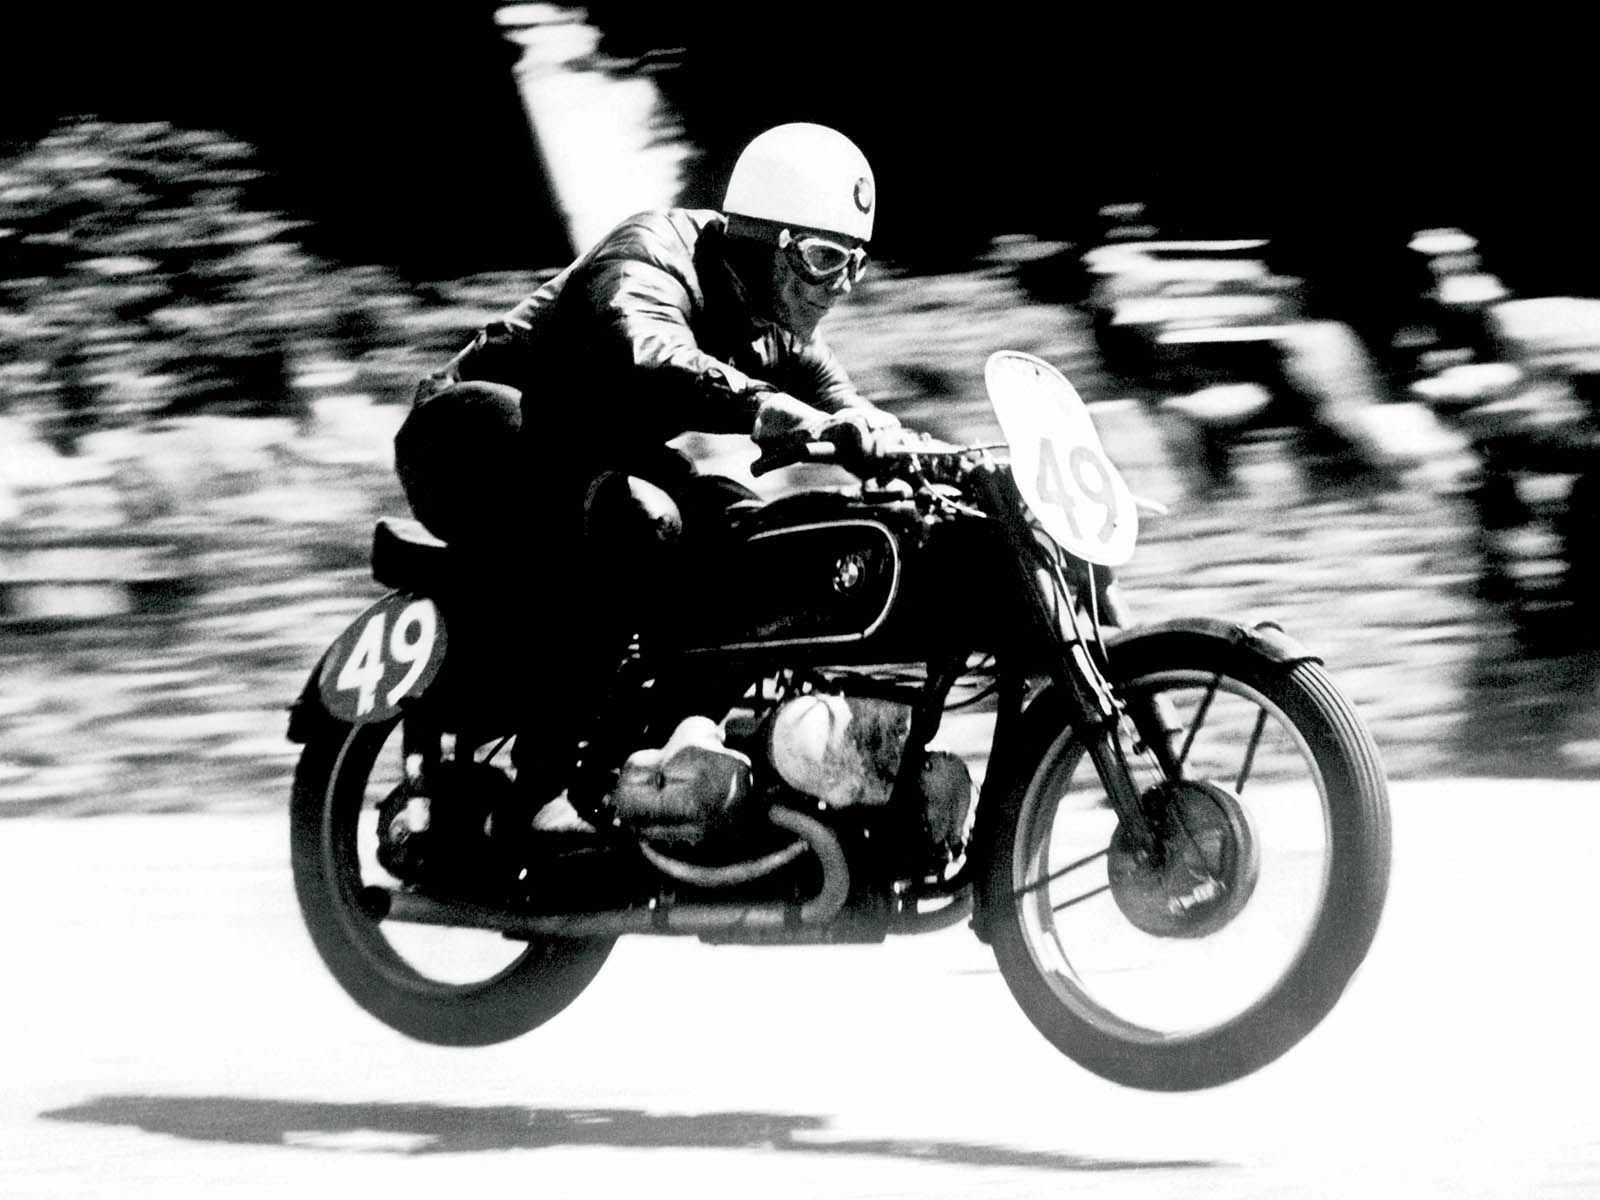 Vintage Motorcycle Wallpaper Free. Bmw motorbikes, Bmw